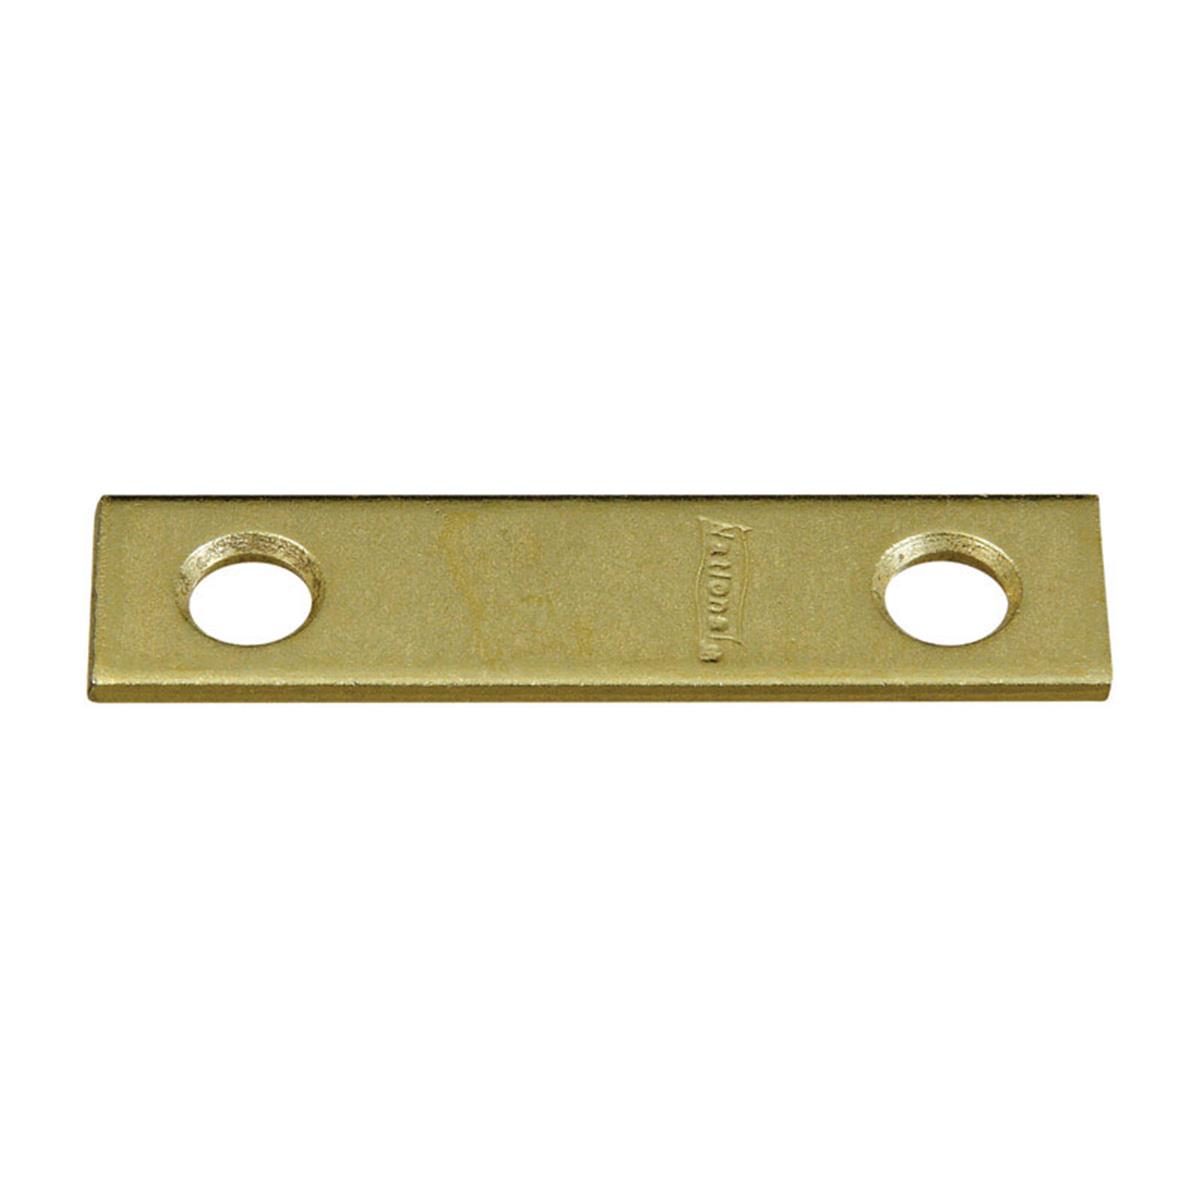 5703715 2 X 0.5 In. Mending Brace, Steel-brass